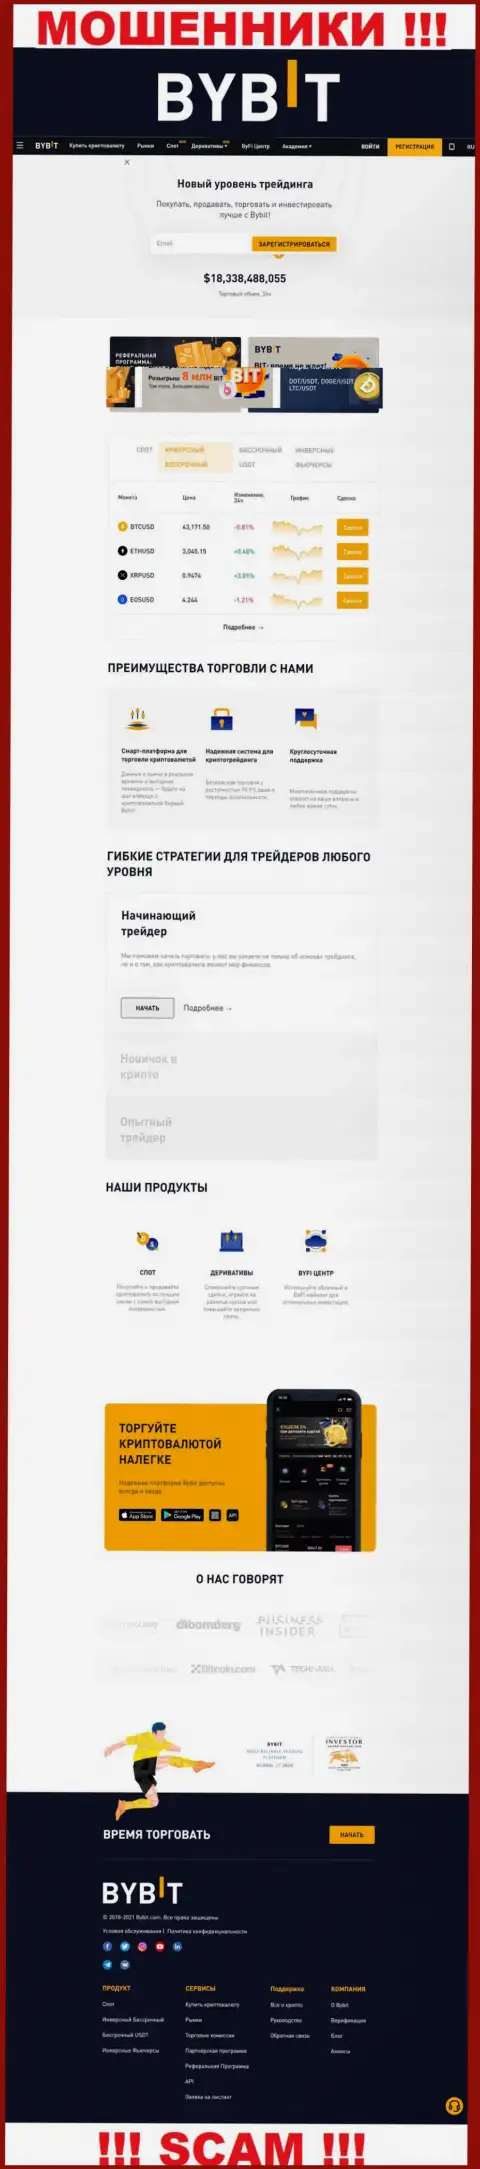 Главная страница официального web-сайта мошенников БайБит Финтеч Лтд